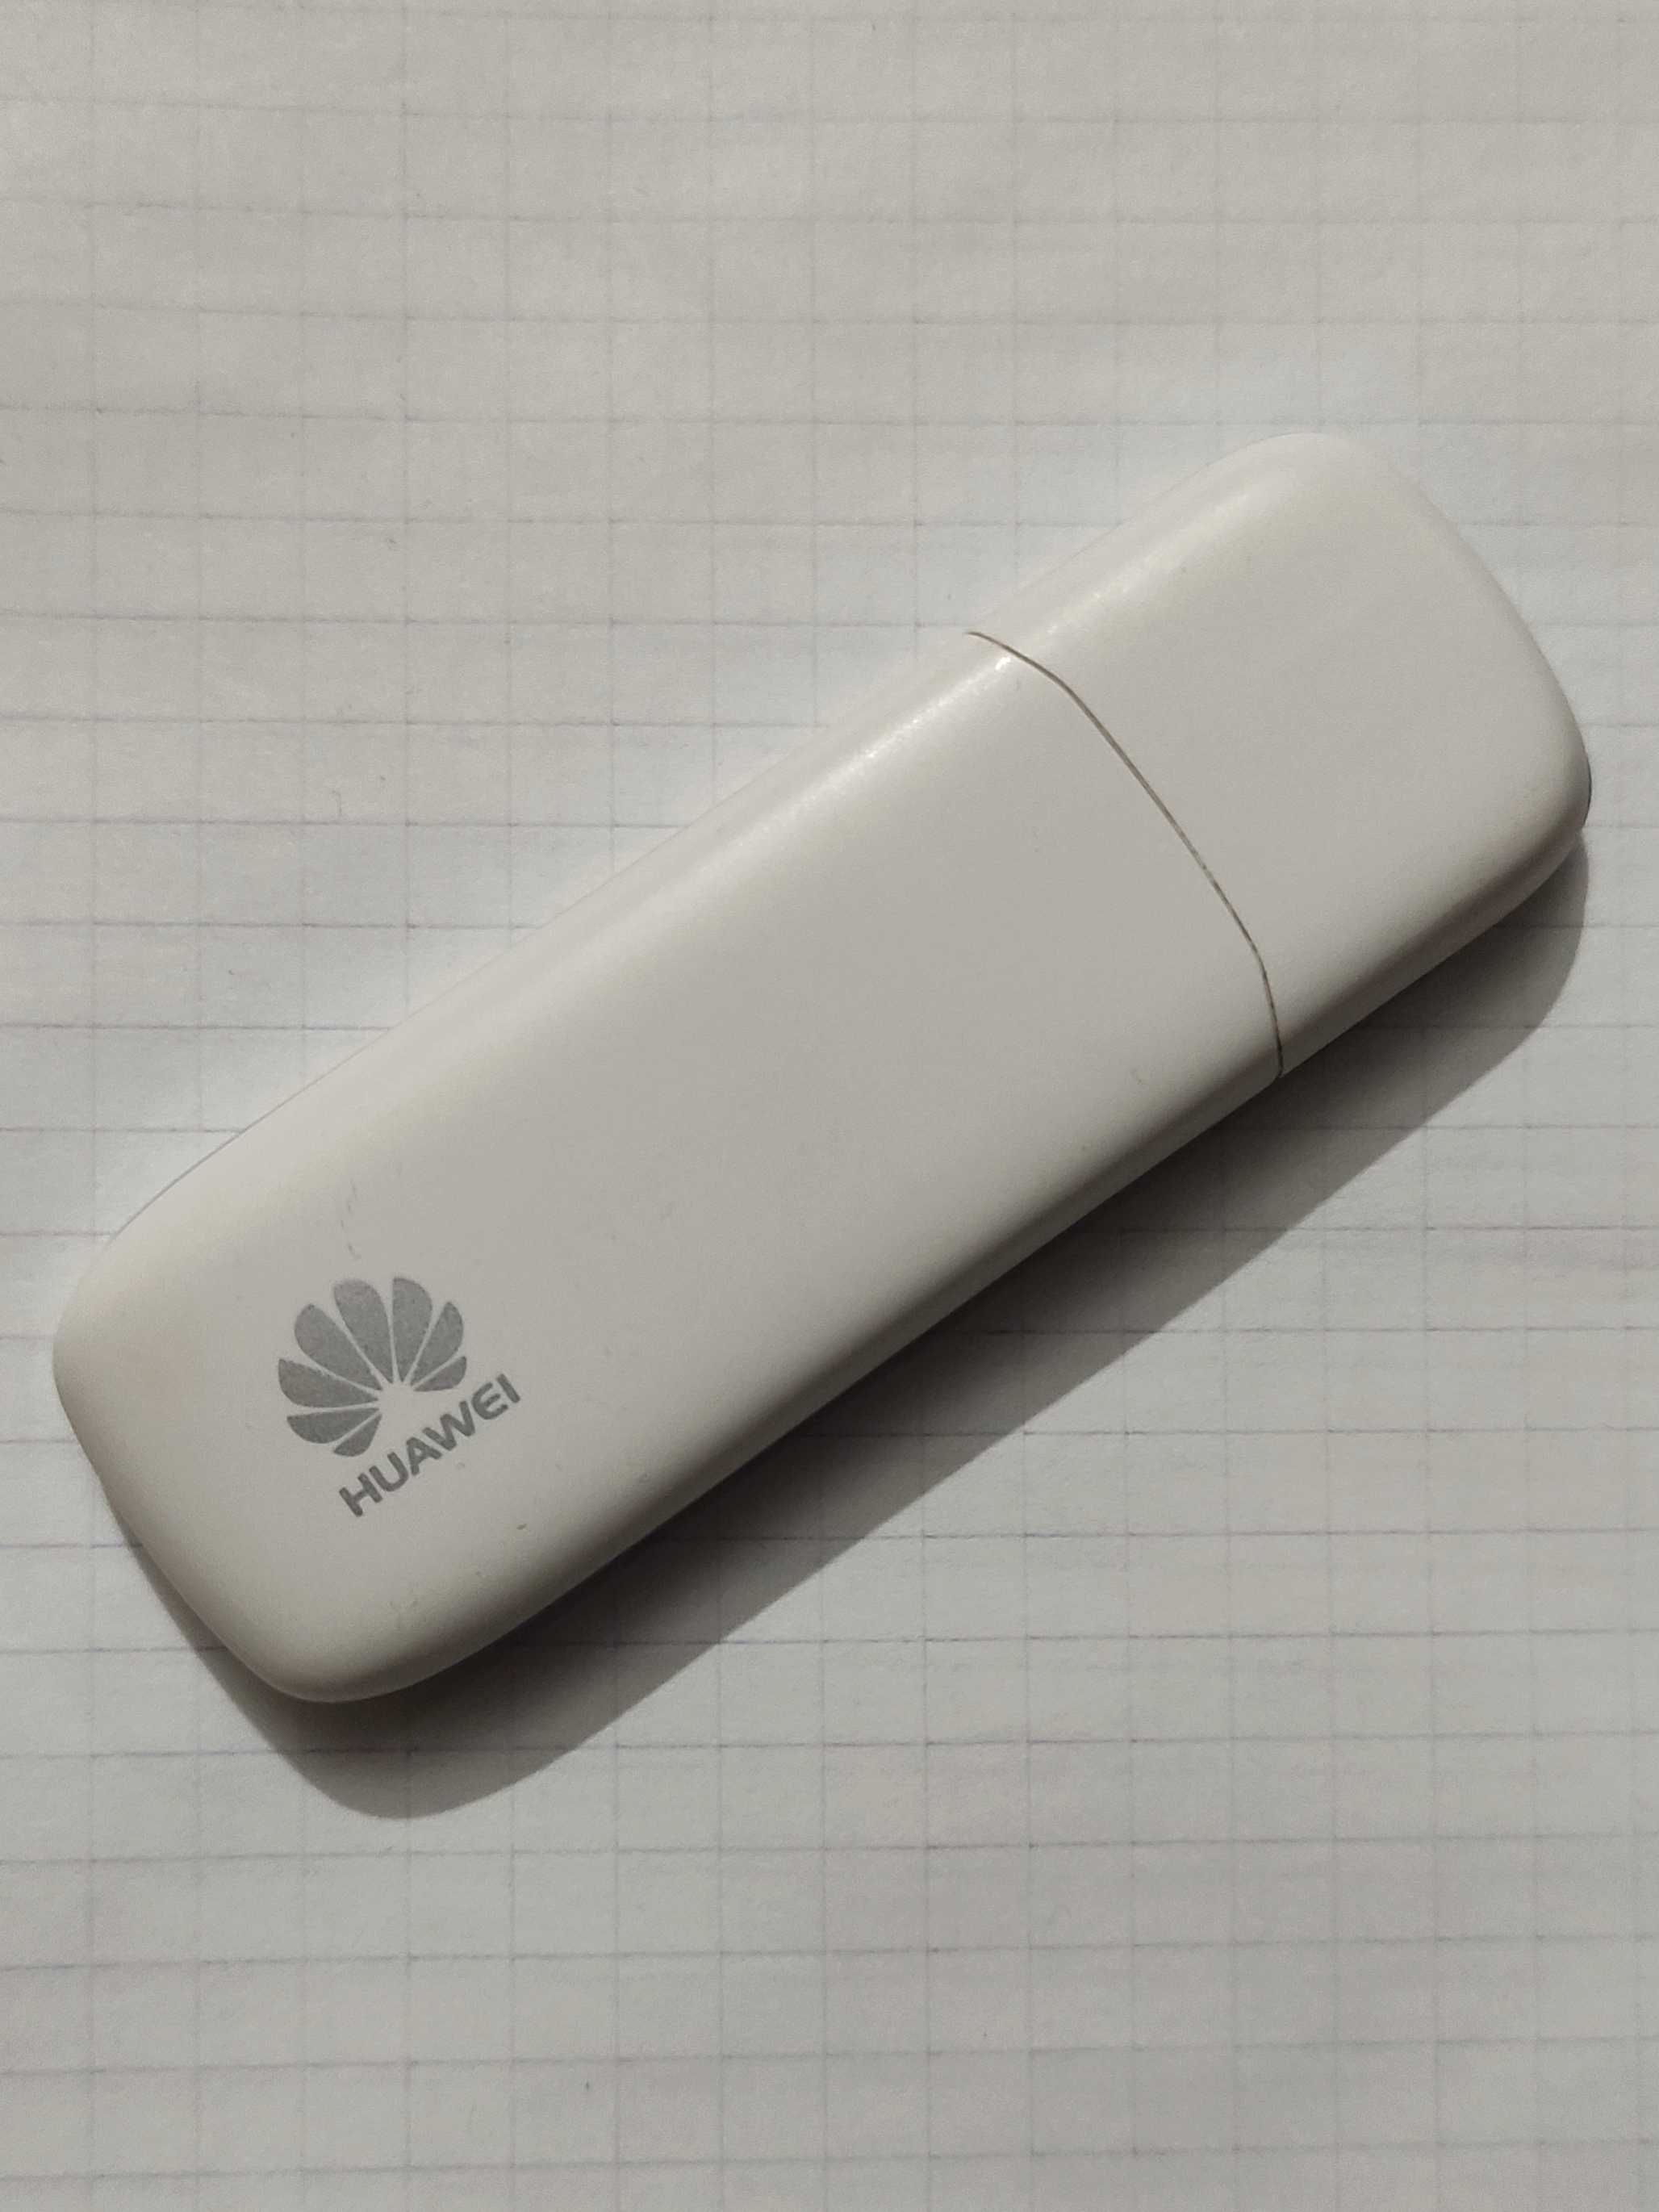 Інтернет-модем 3G Huawei (Інтертелеком). Робочий в ідеальному стані.